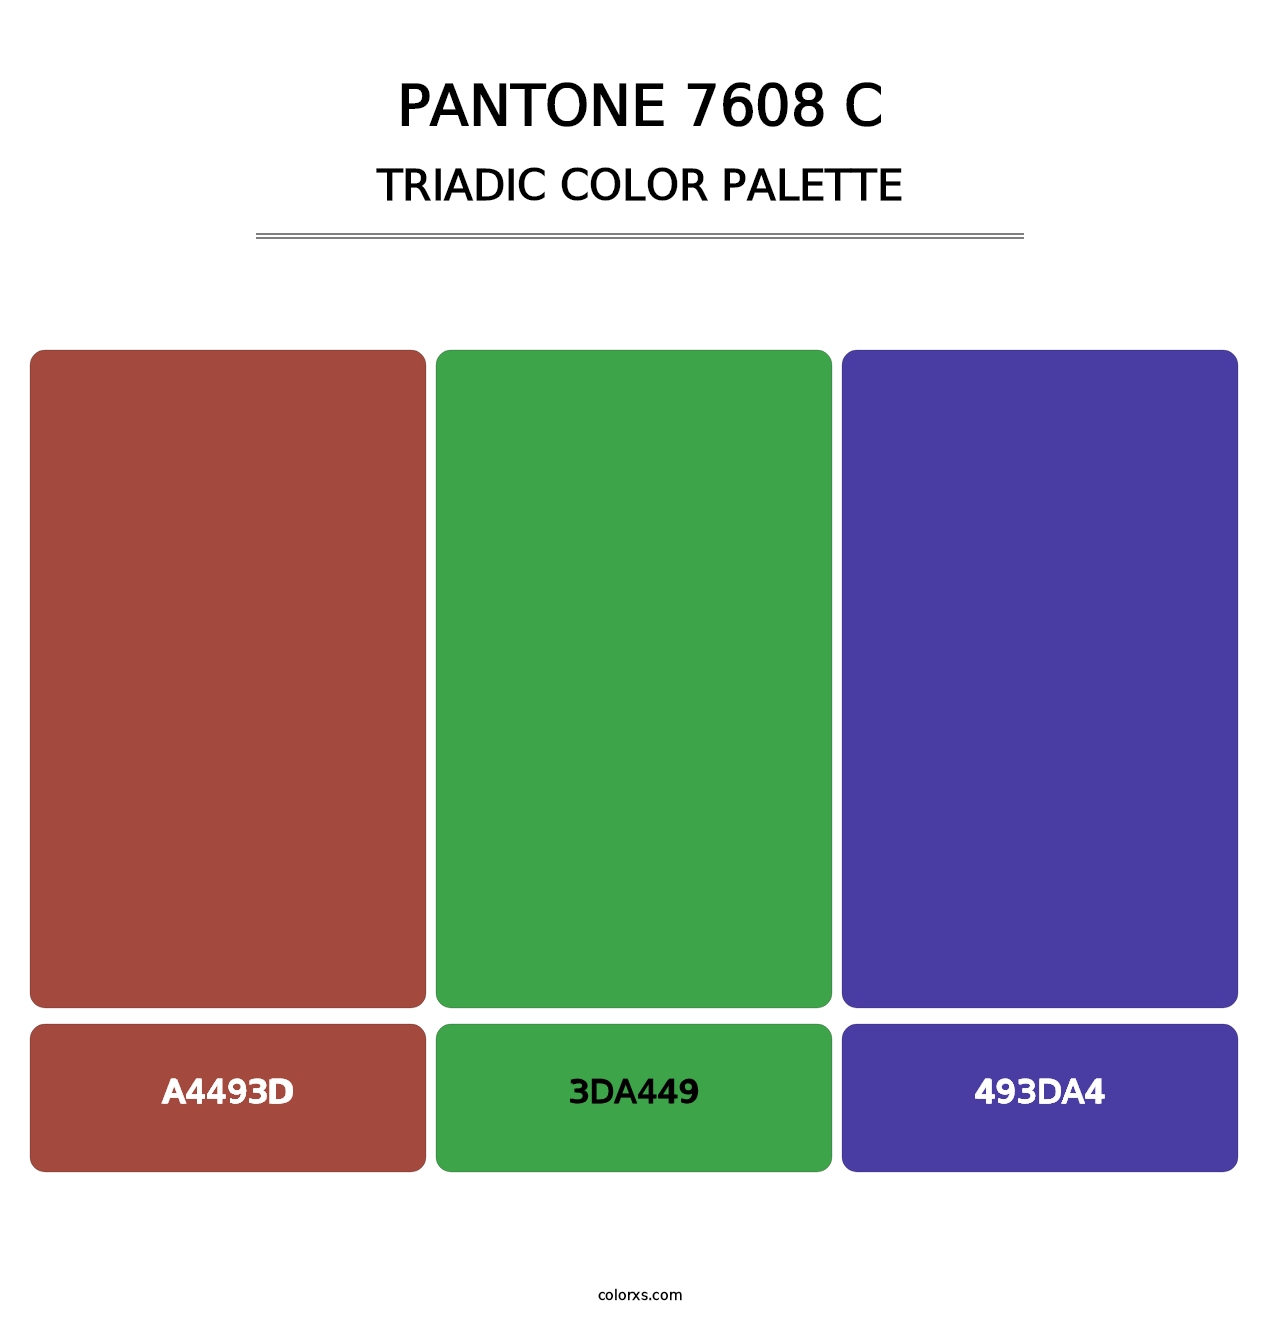 PANTONE 7608 C - Triadic Color Palette